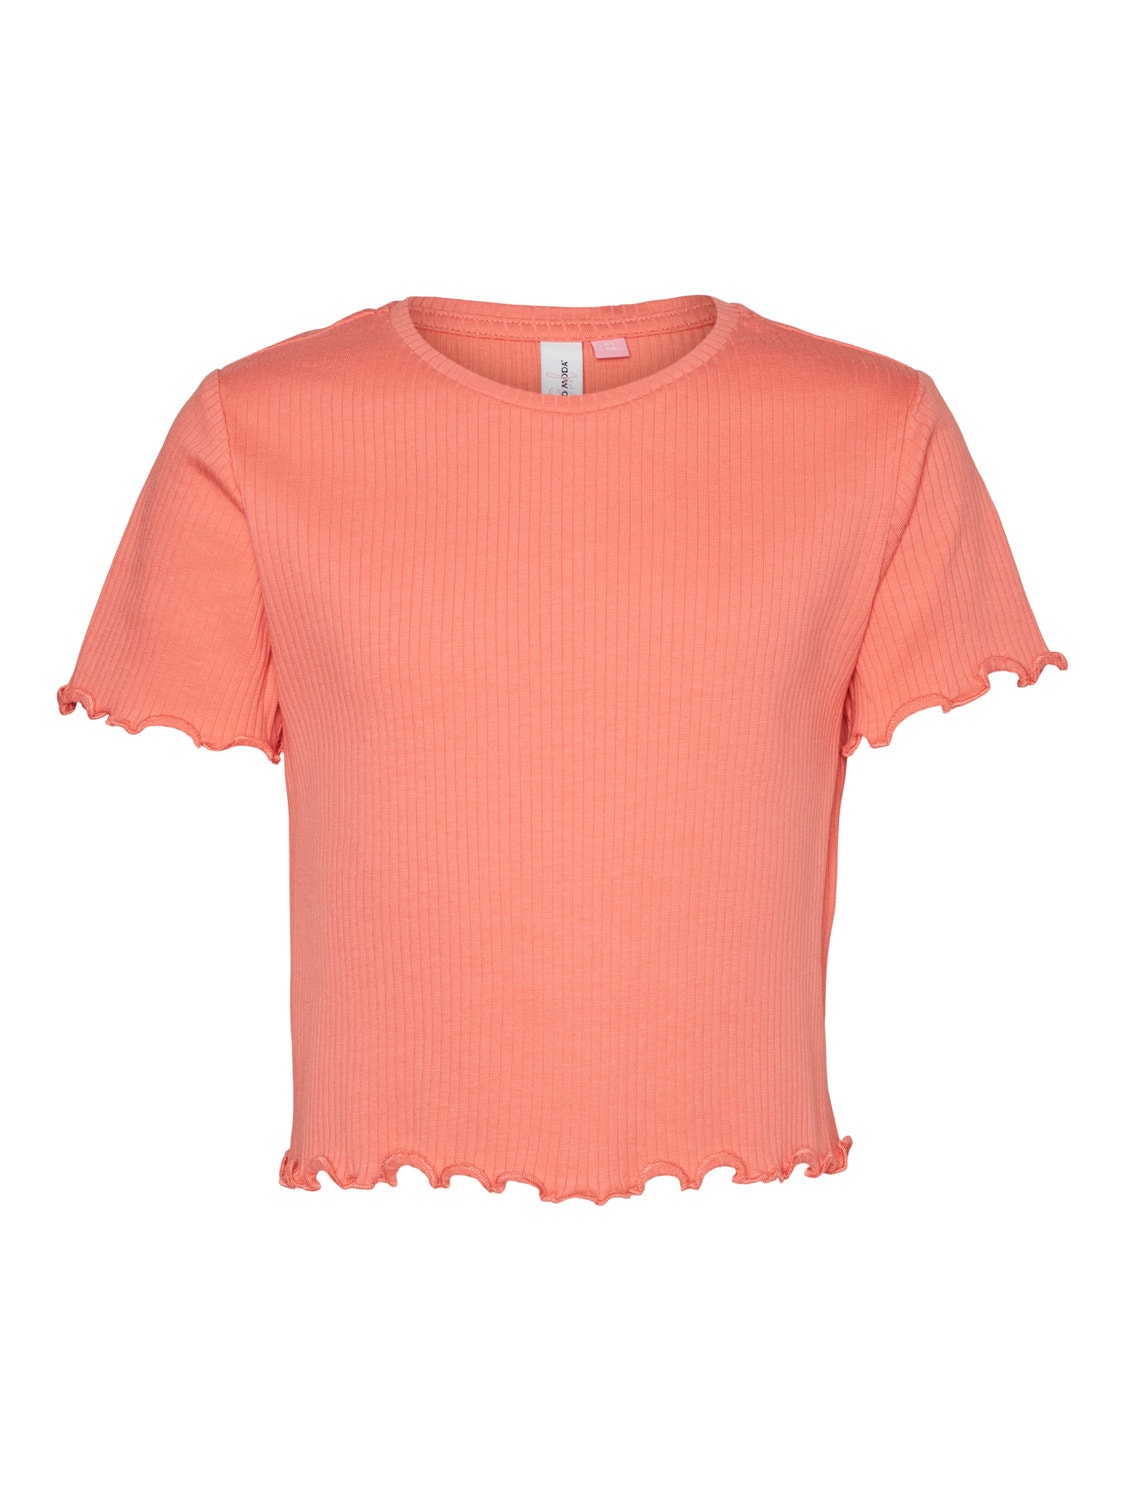 Vero Moda VMLAVENDER T-Shirt -Georgia Peach - 10285290